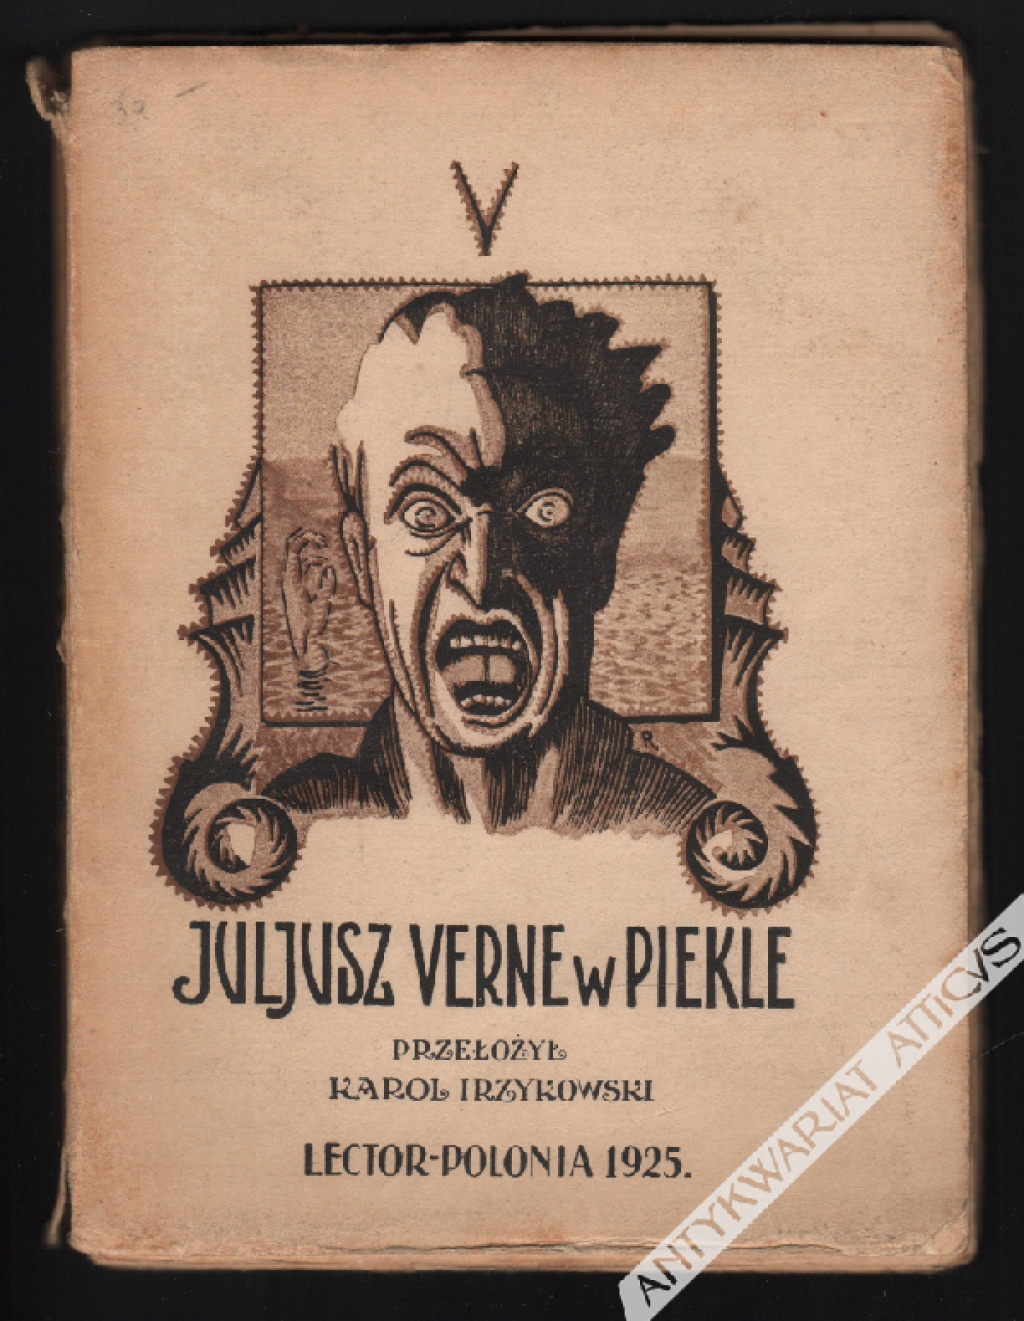 Juljusz Verne w piekle. Wybór autorów niemieckich